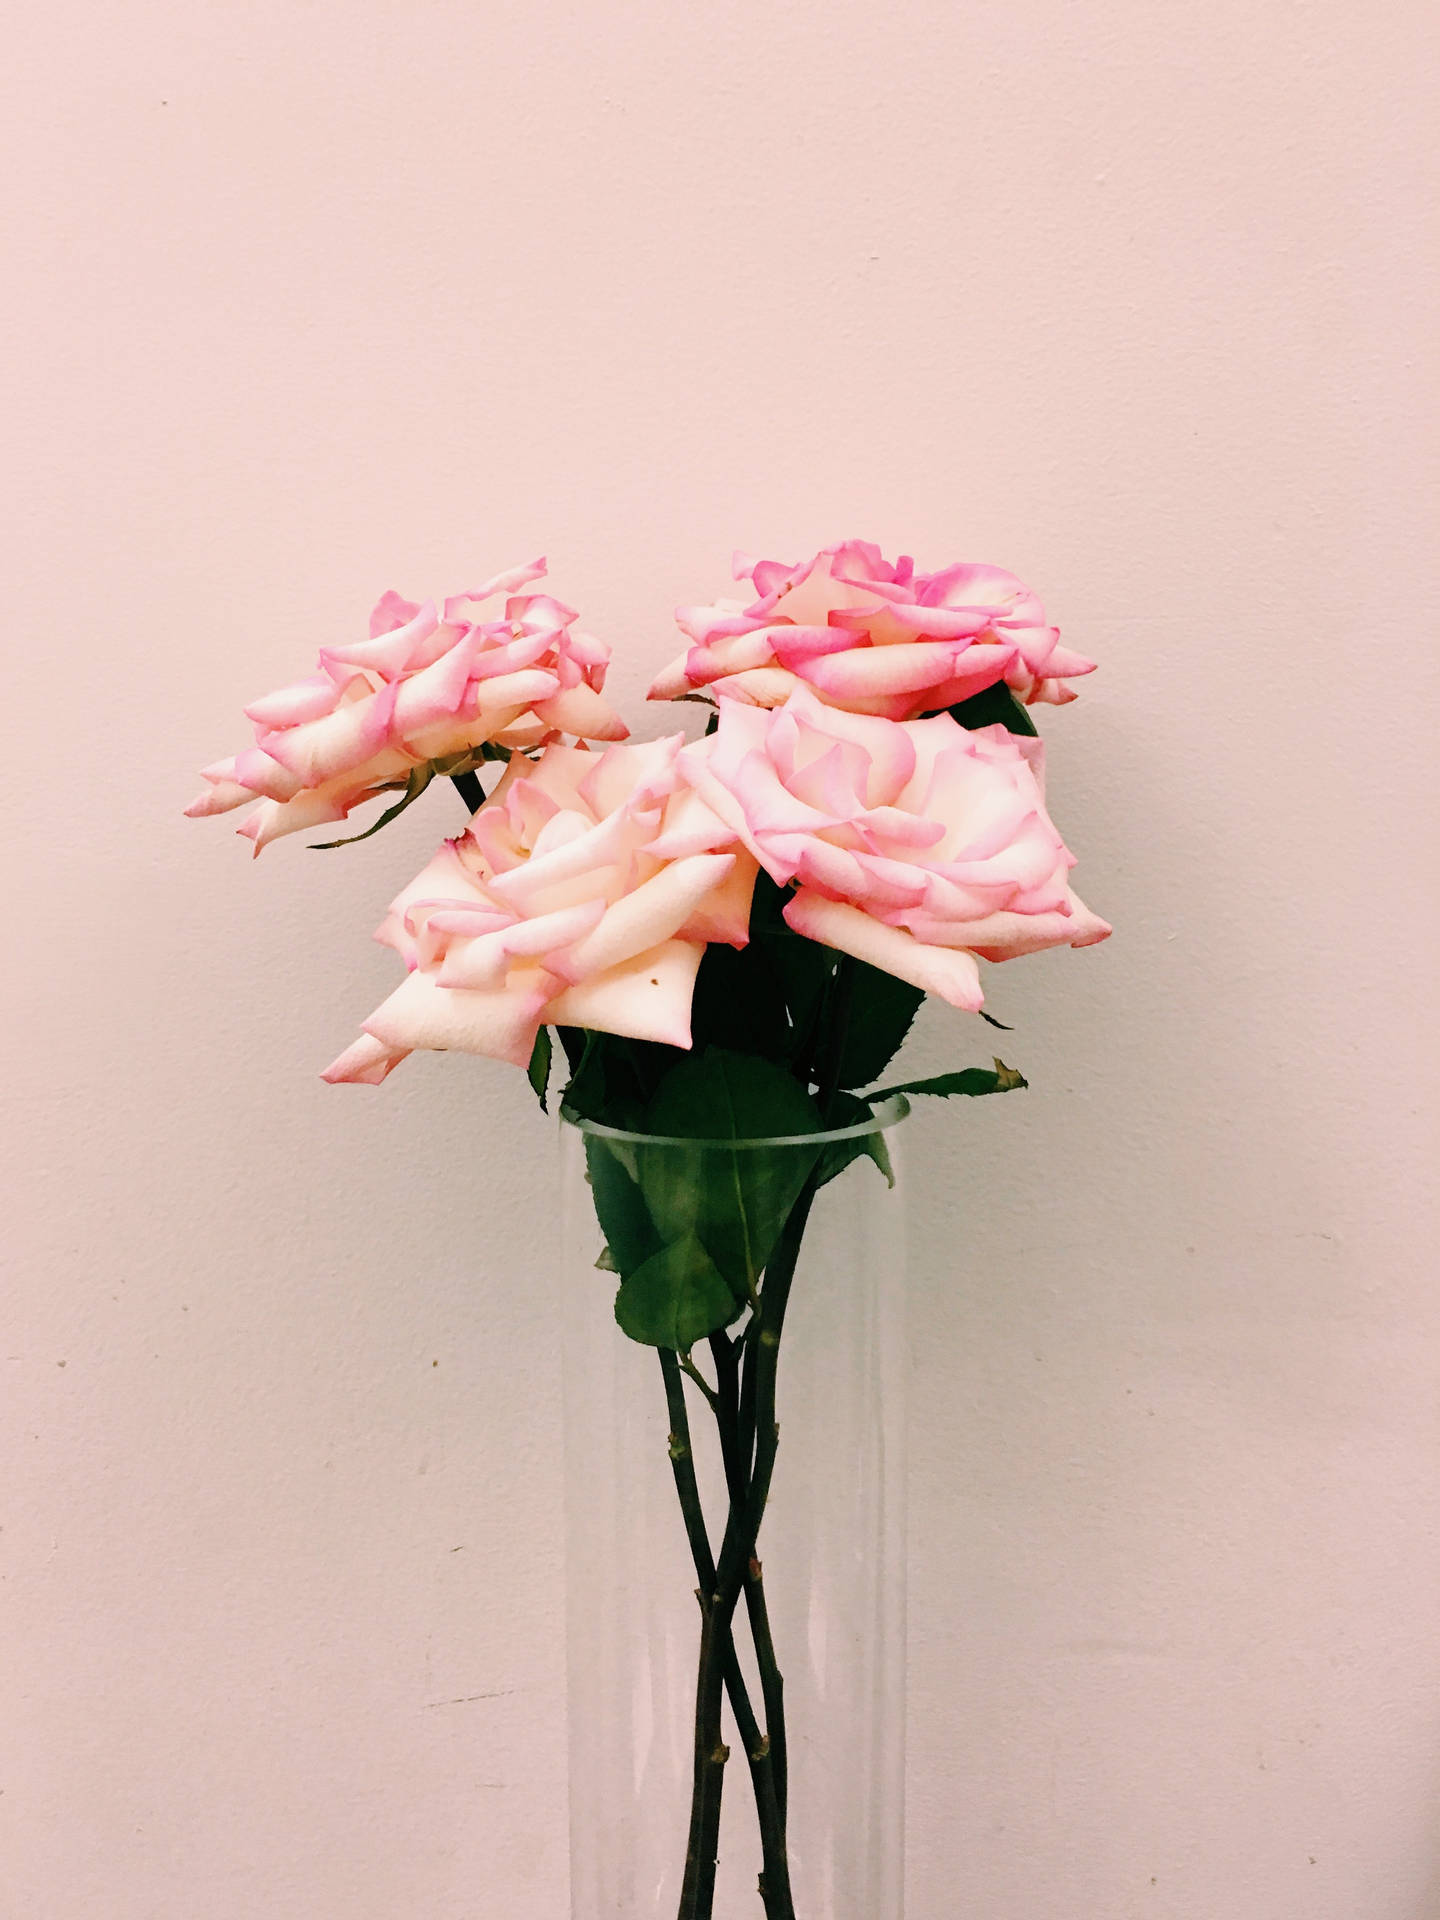 Unhermoso Paisaje De Flores Rosadas Y Blancas En Plena Floración Fondo de pantalla